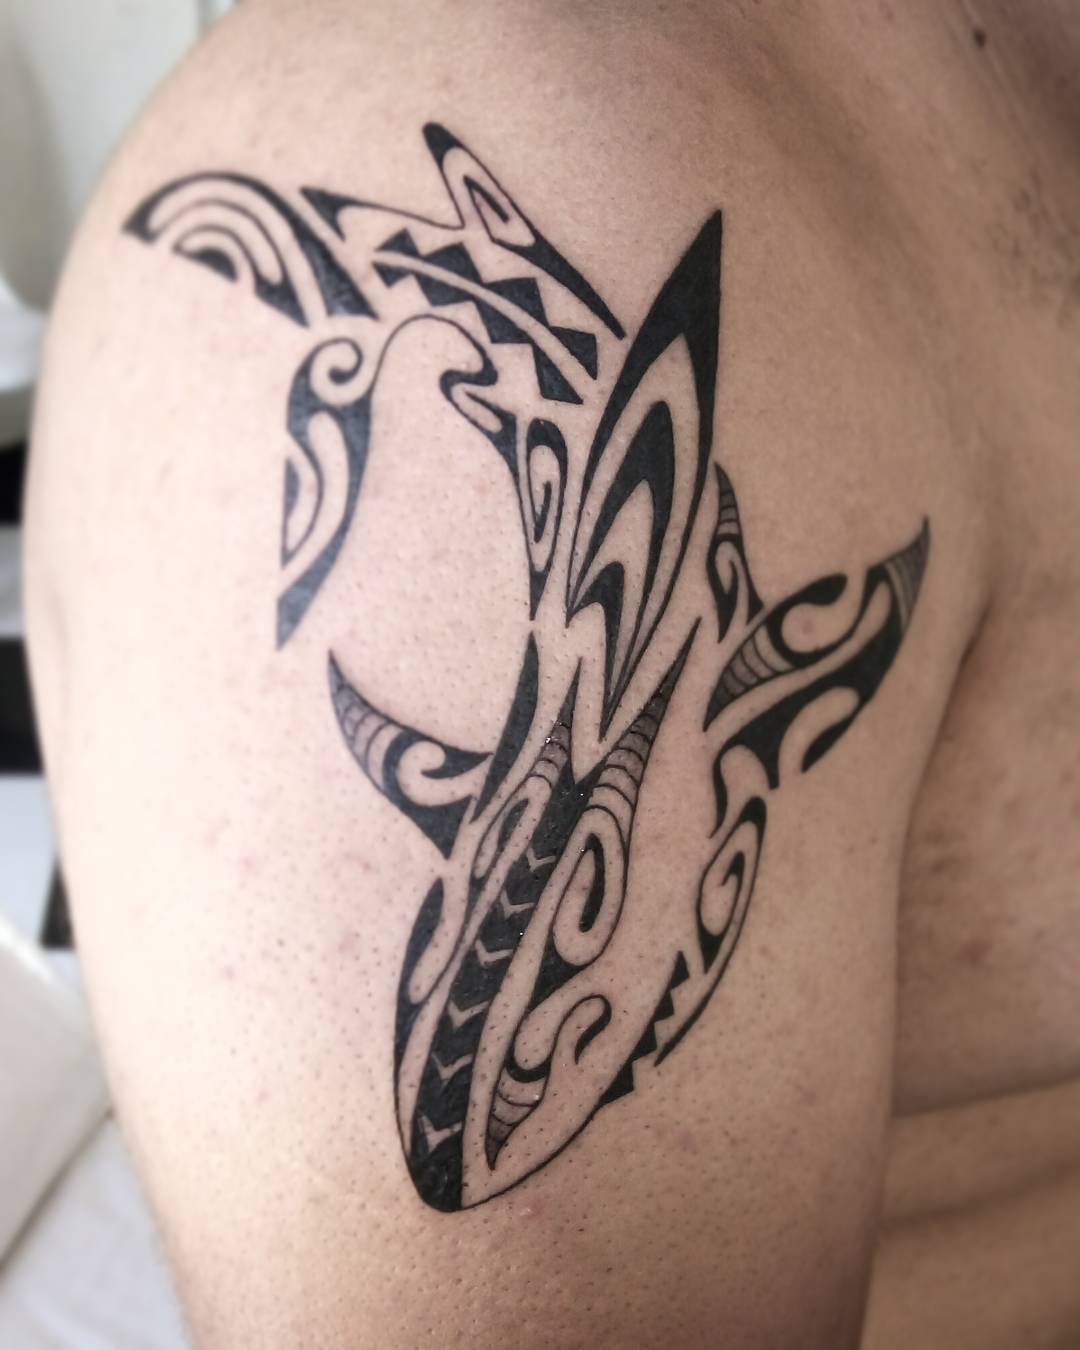 Shark Maori Tattoo by Mario Okbcatattoo